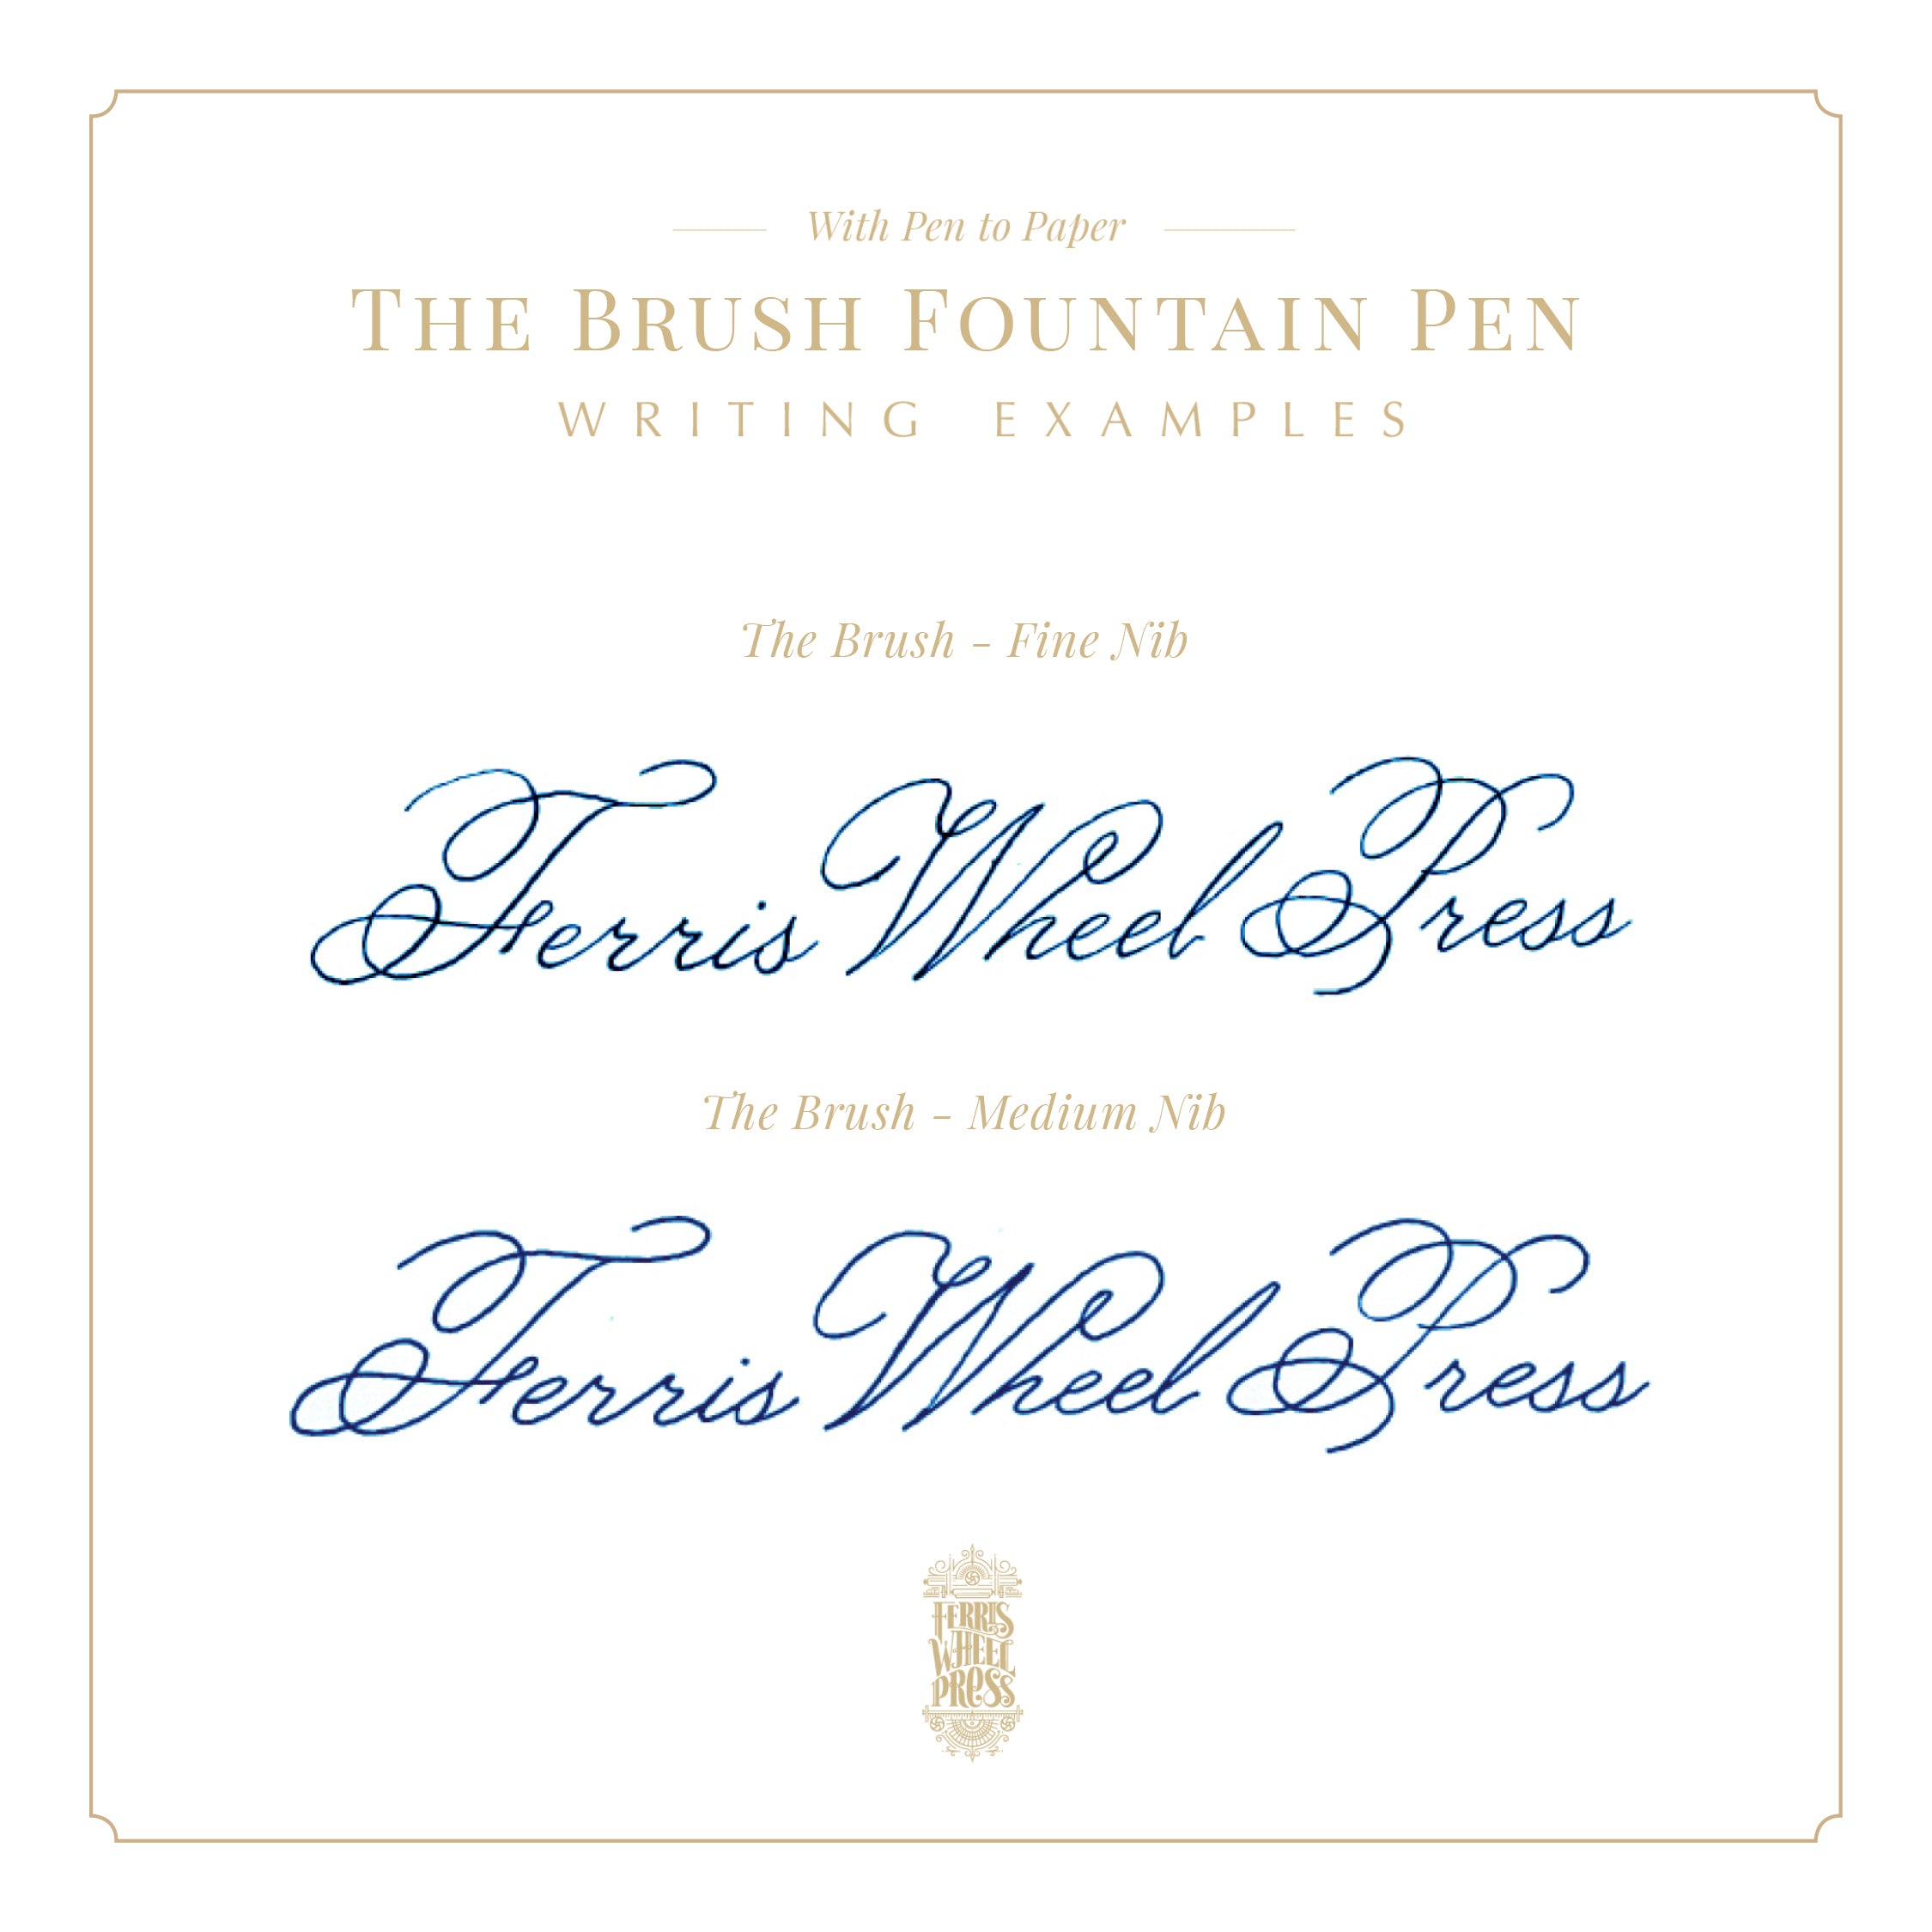 Cerulean Midnight Brush Fountain Pen